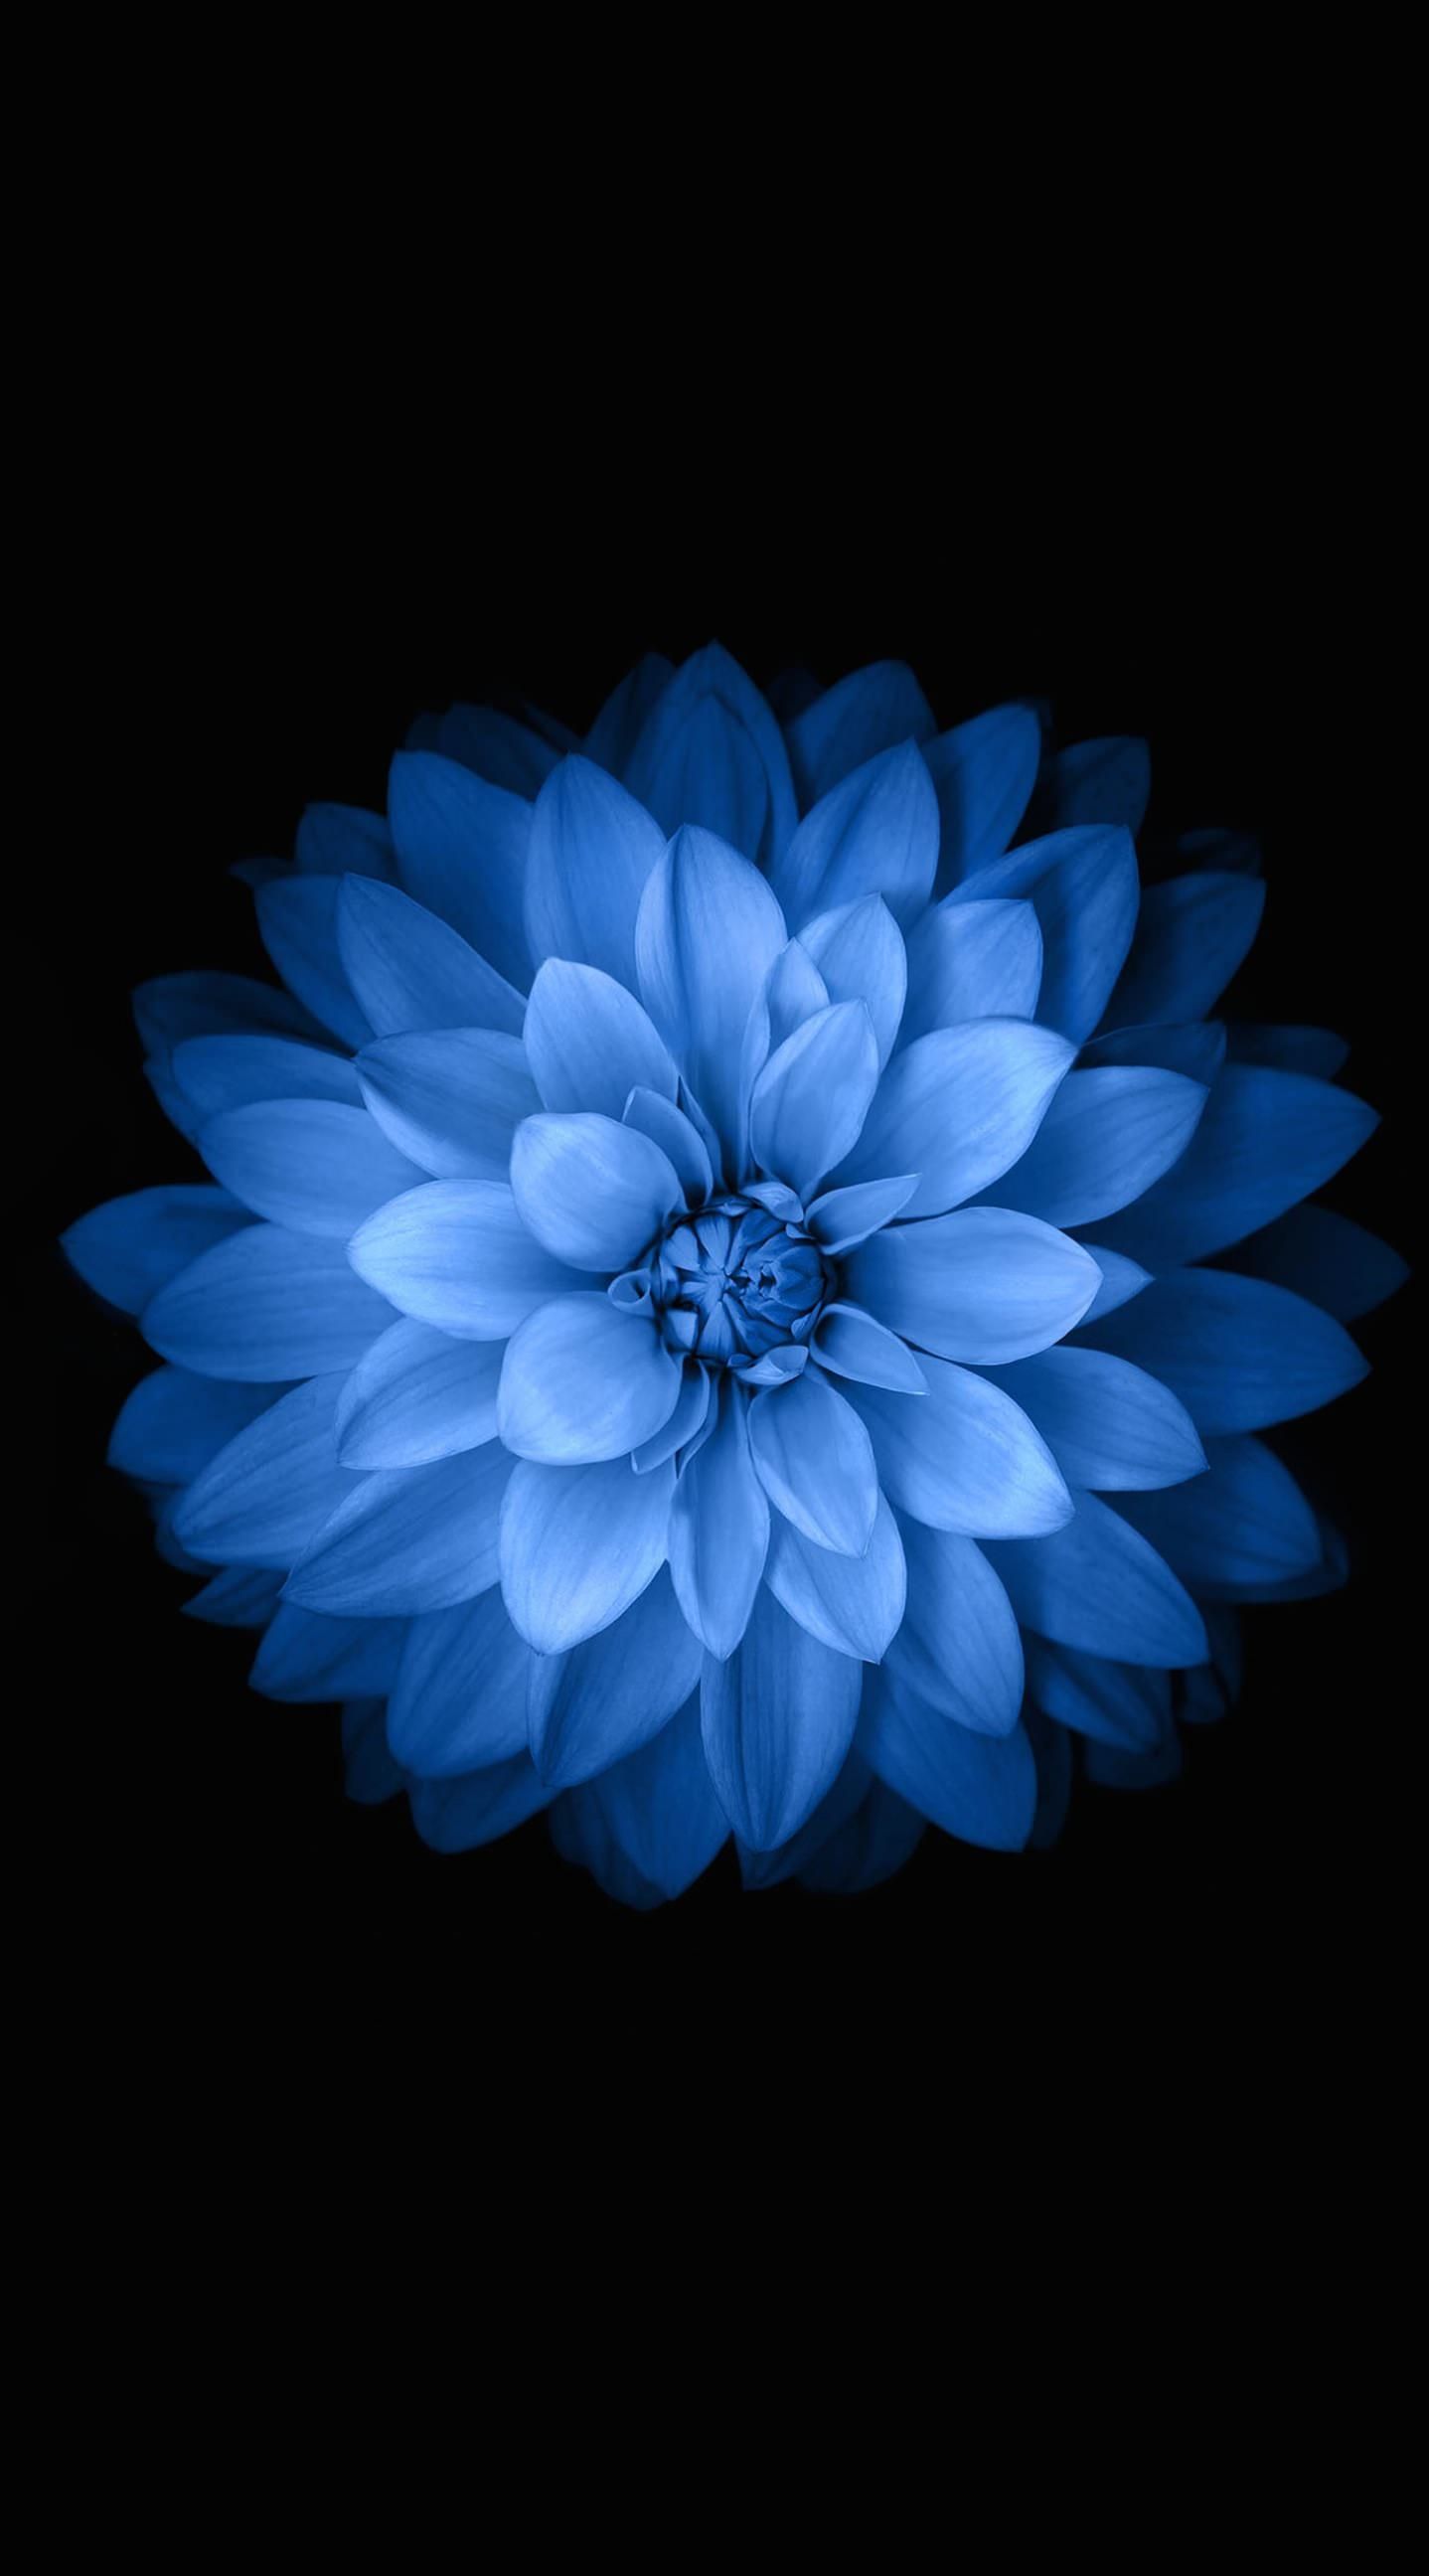 Iphone Flower Blue Wallpaper Hd